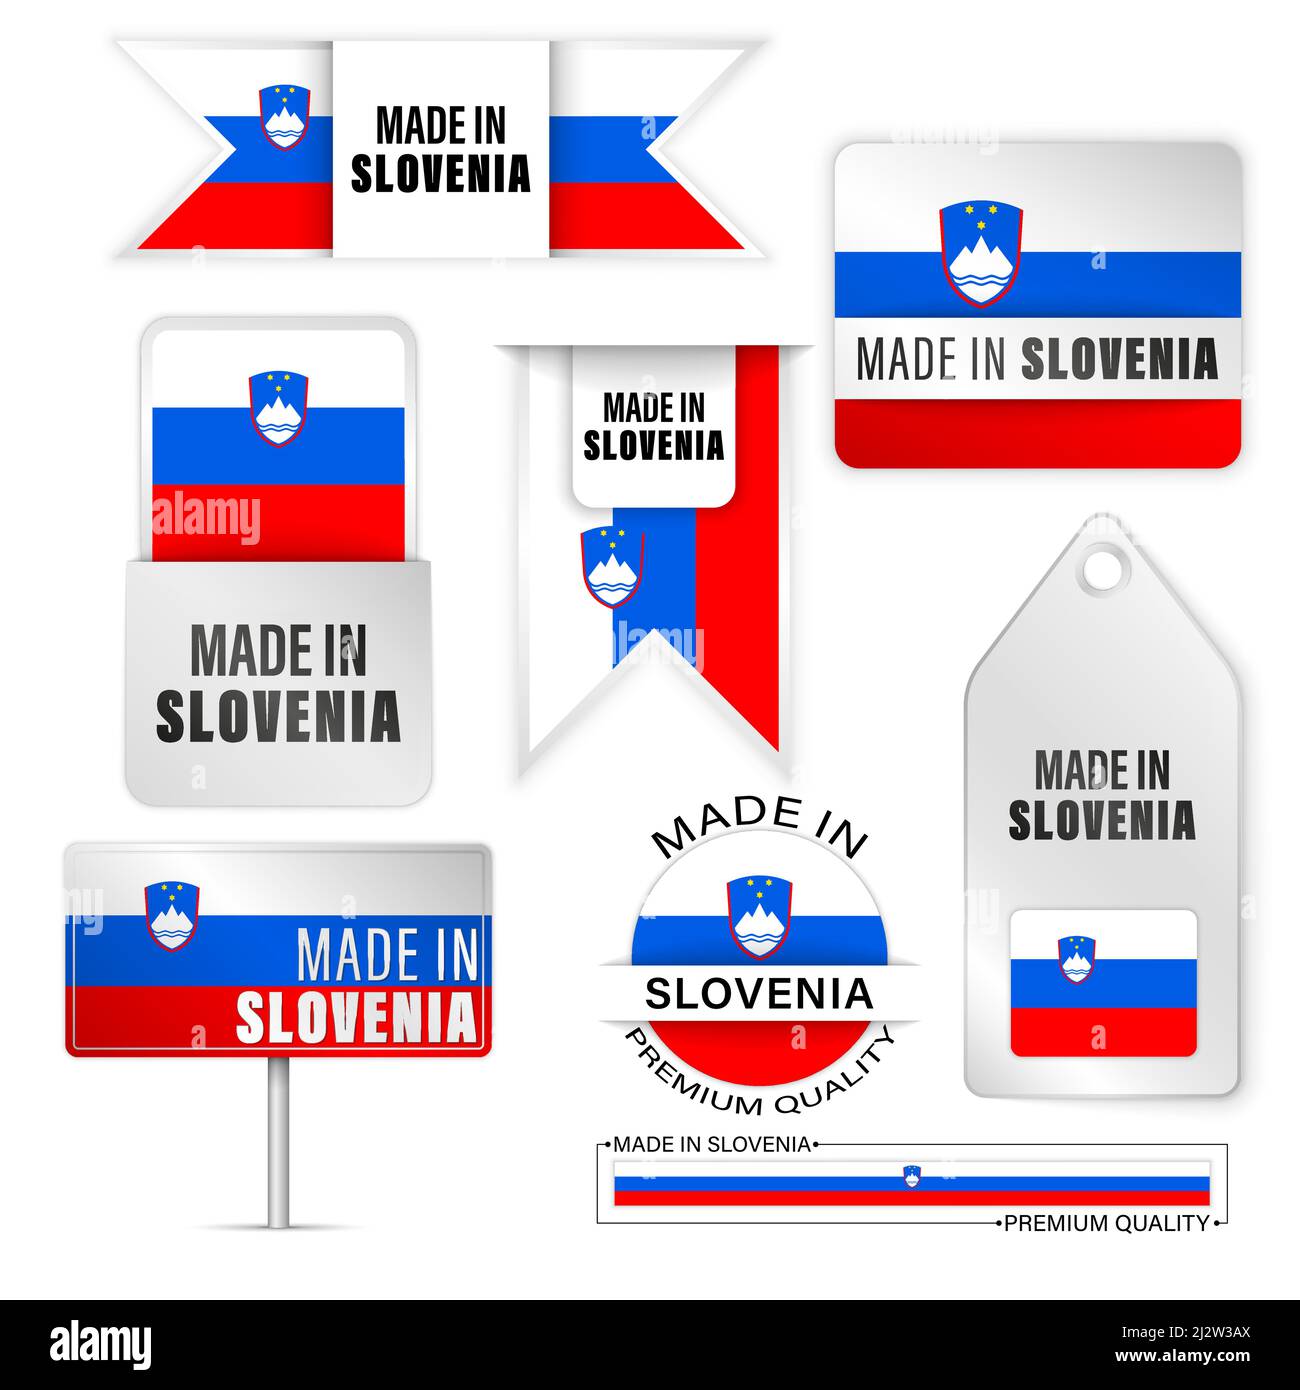 Made in Slovenia Grafiken und Labels Set. Einige Elemente der Auswirkung für die Verwendung, die Sie daraus machen möchten. Stock Vektor